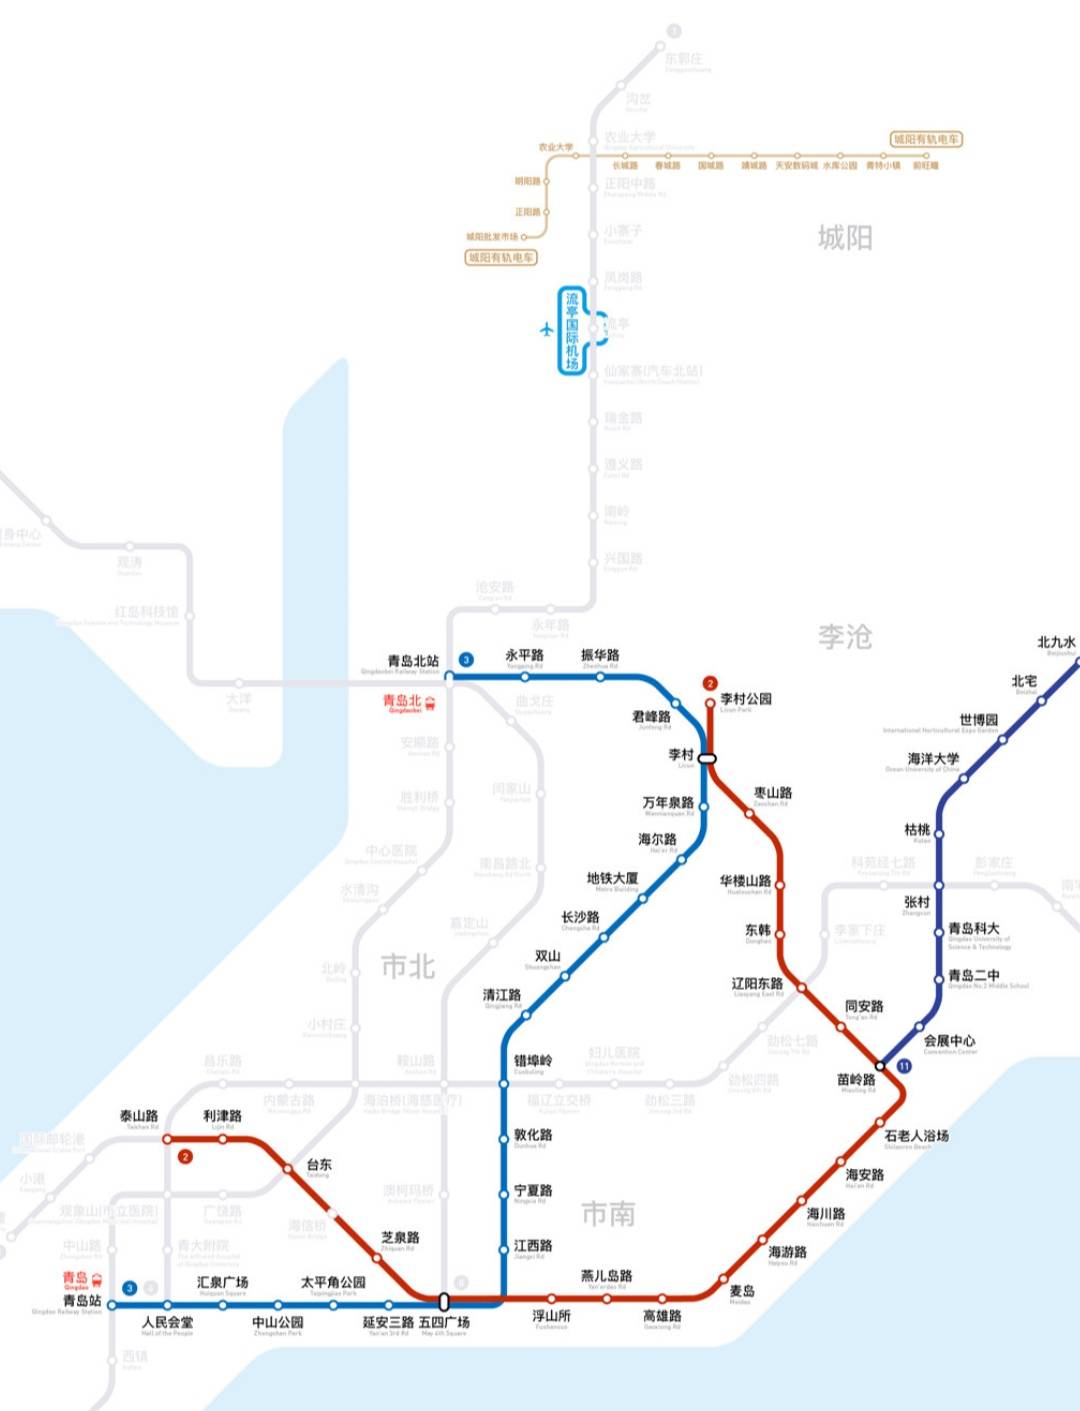 青岛旅游行李寄存攻略,青岛地铁景点地图门票及青岛美食